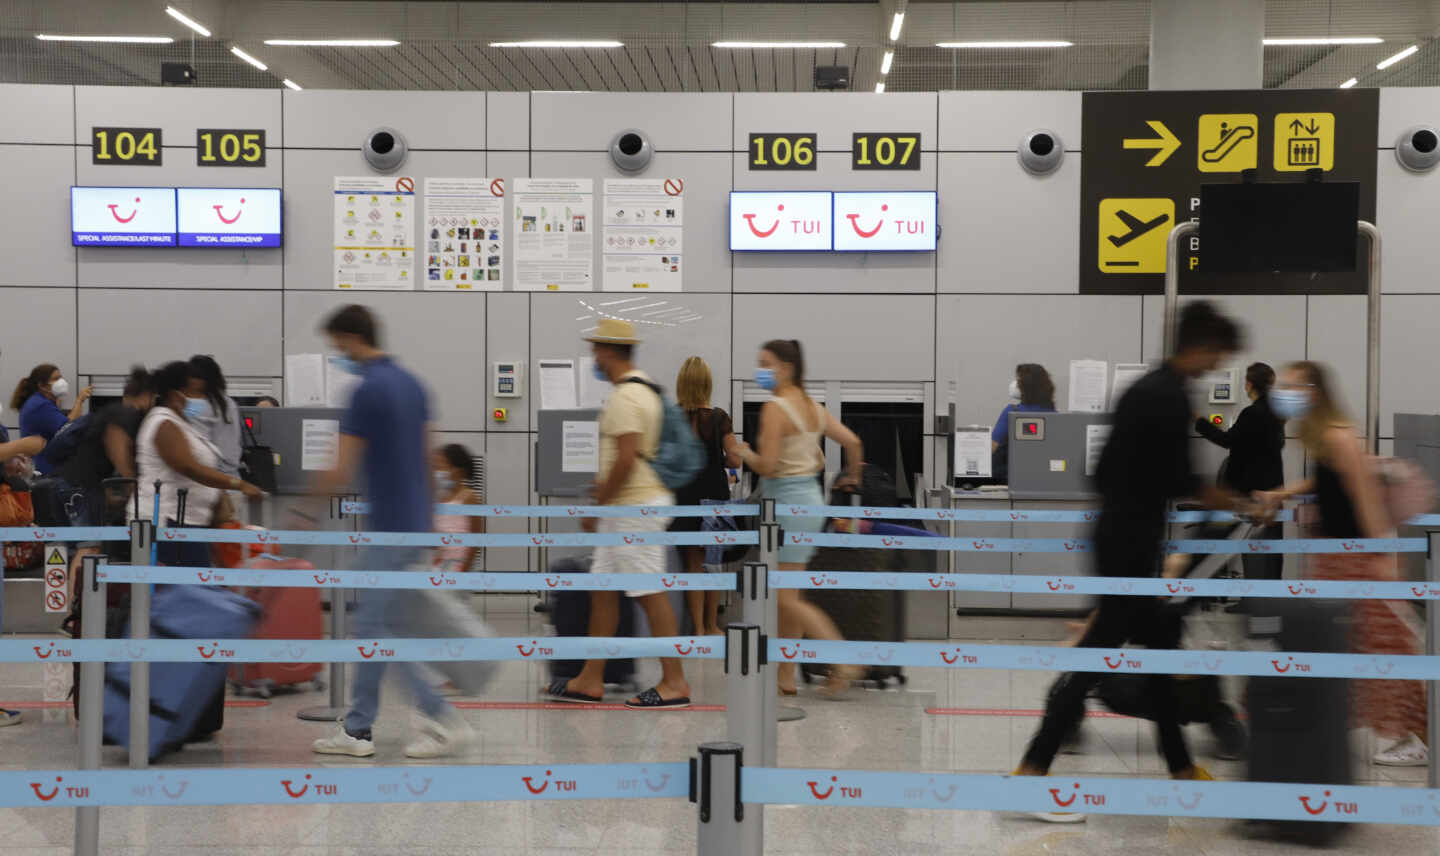 Varios pasajeros hacen cola en los mostradores de facturación de Tui en el aeropuerto de Palma de Mallorca, en una imagen de archivo.